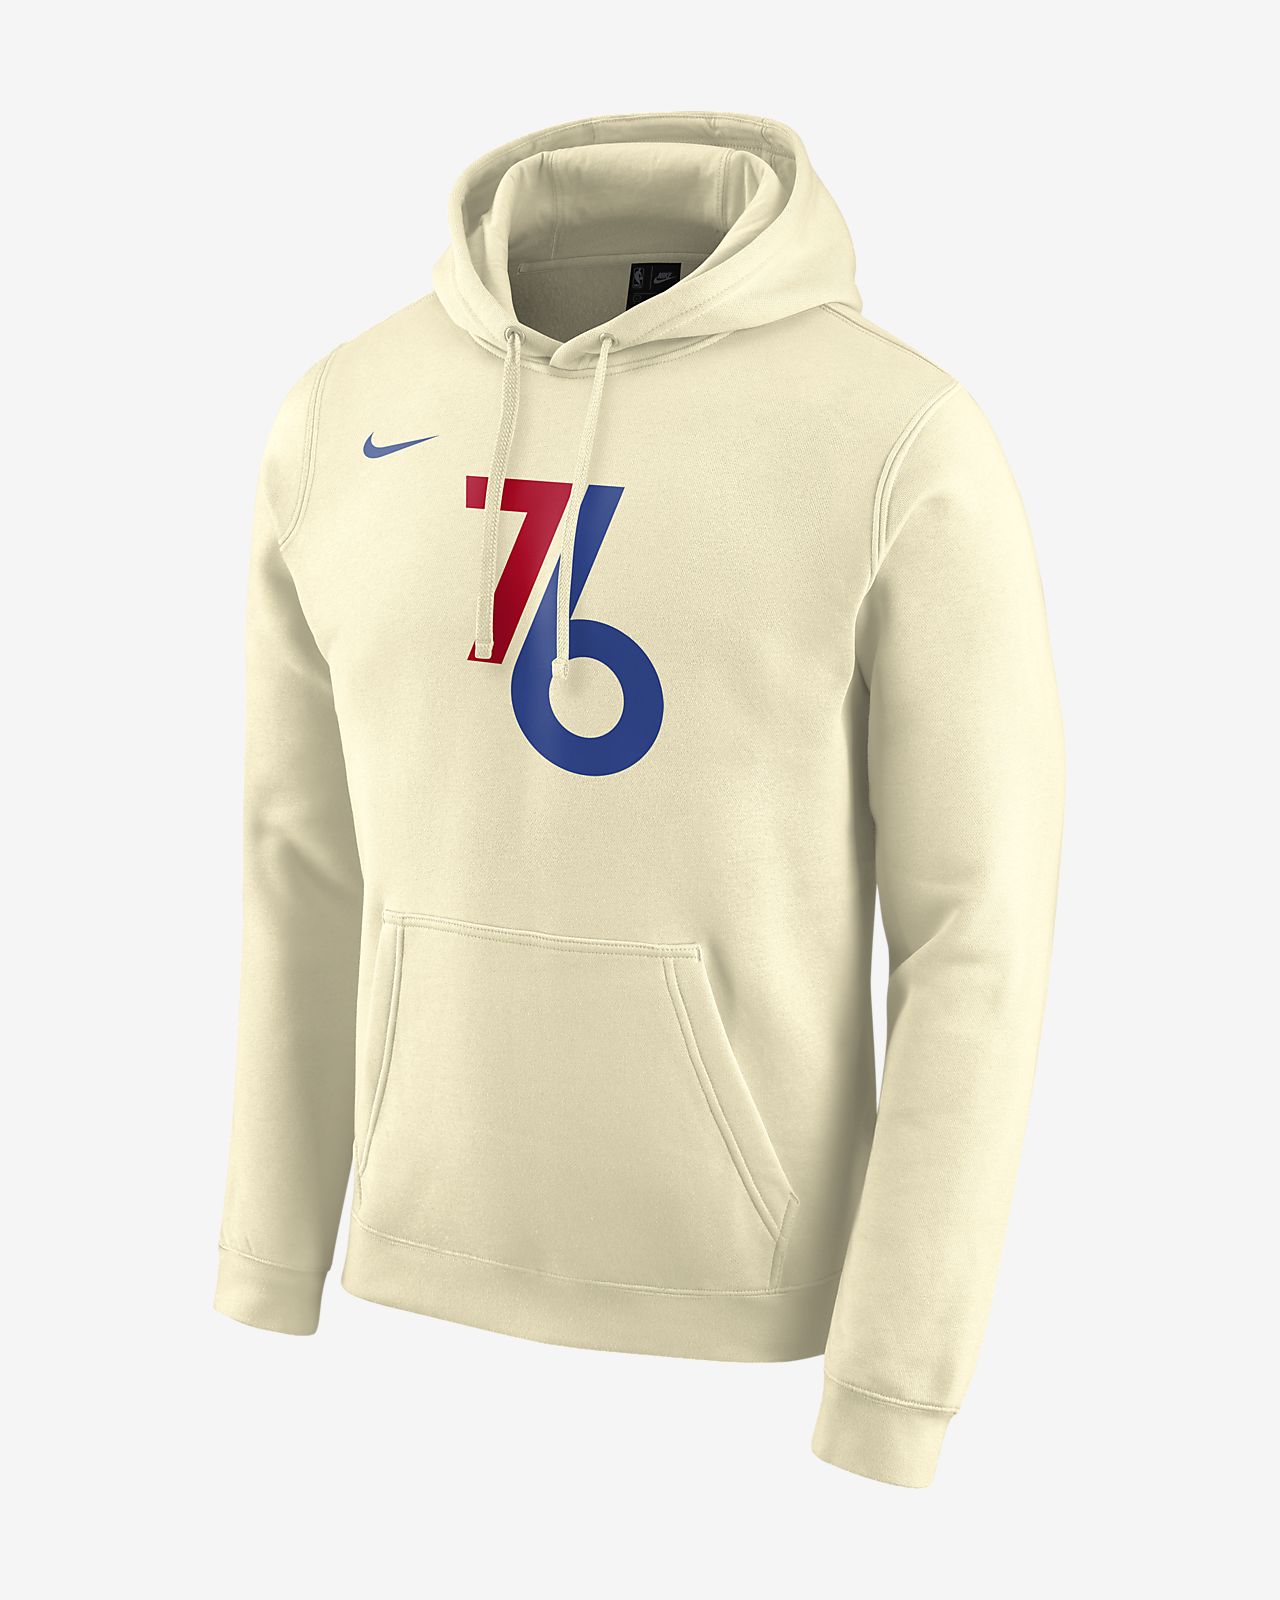 76ers nike hoodie